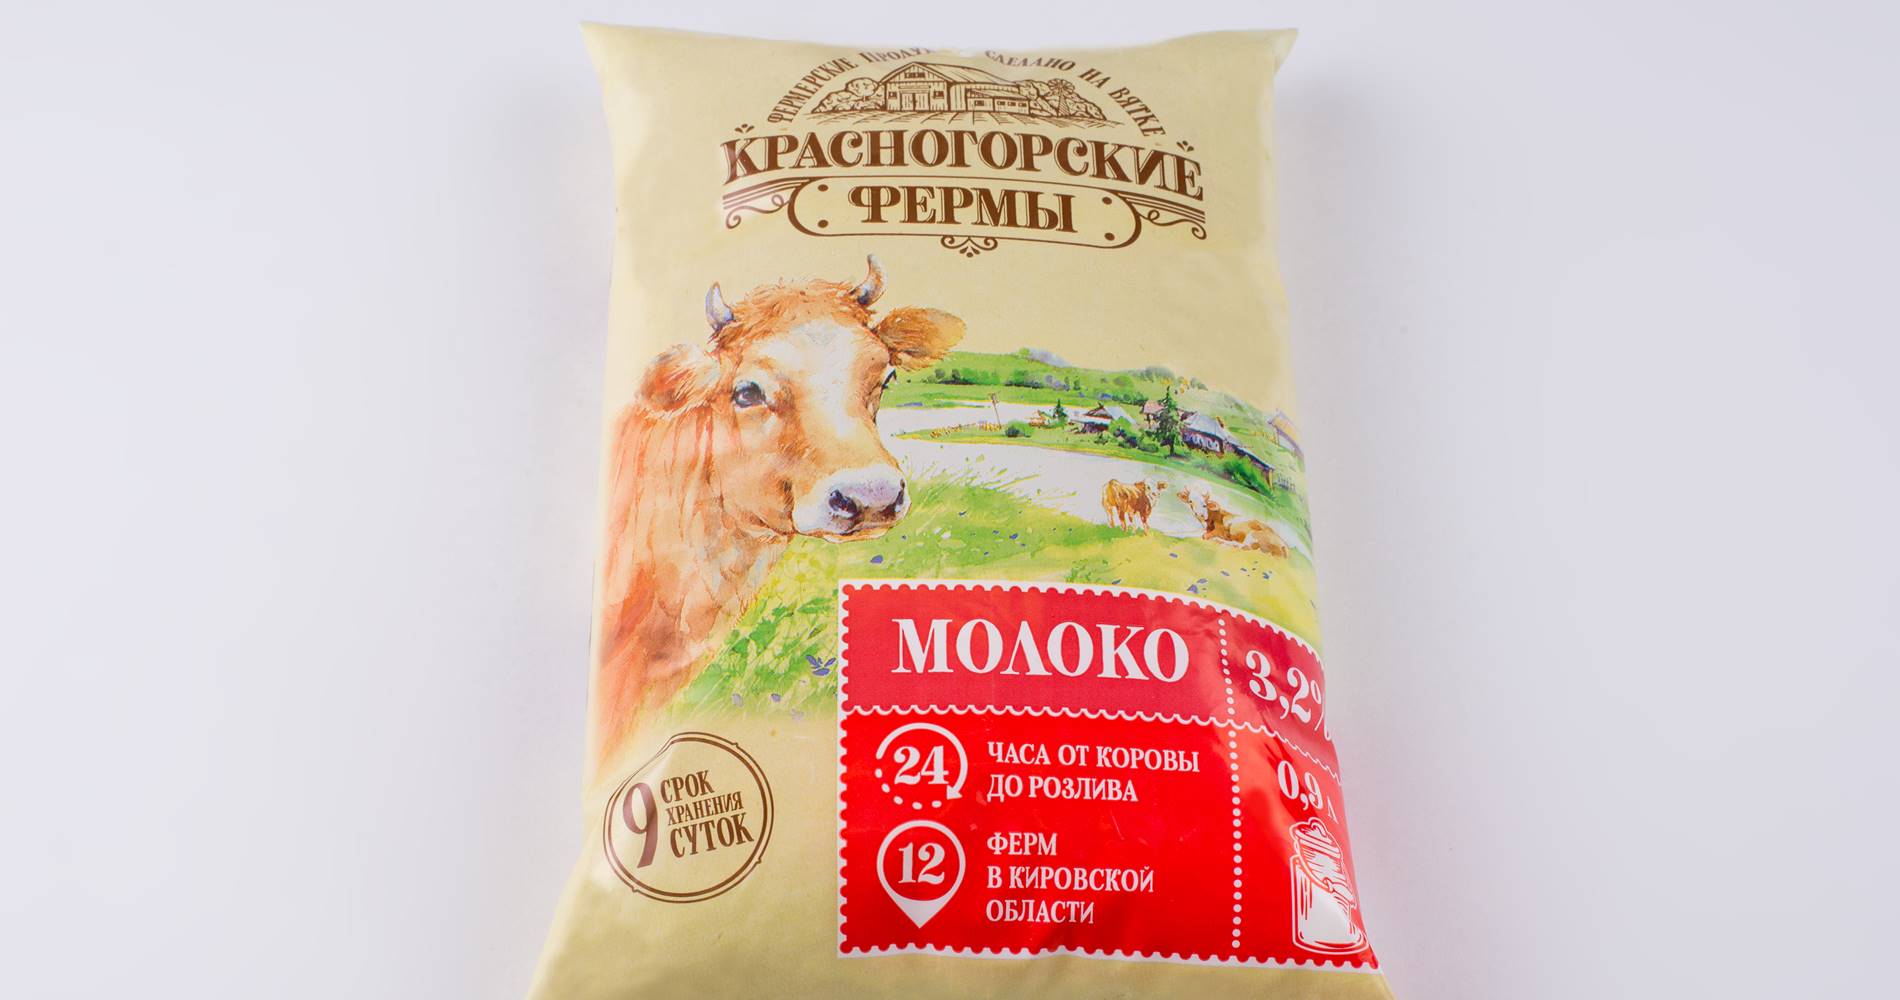 Какие виды молока самые популярные: что пьет население России